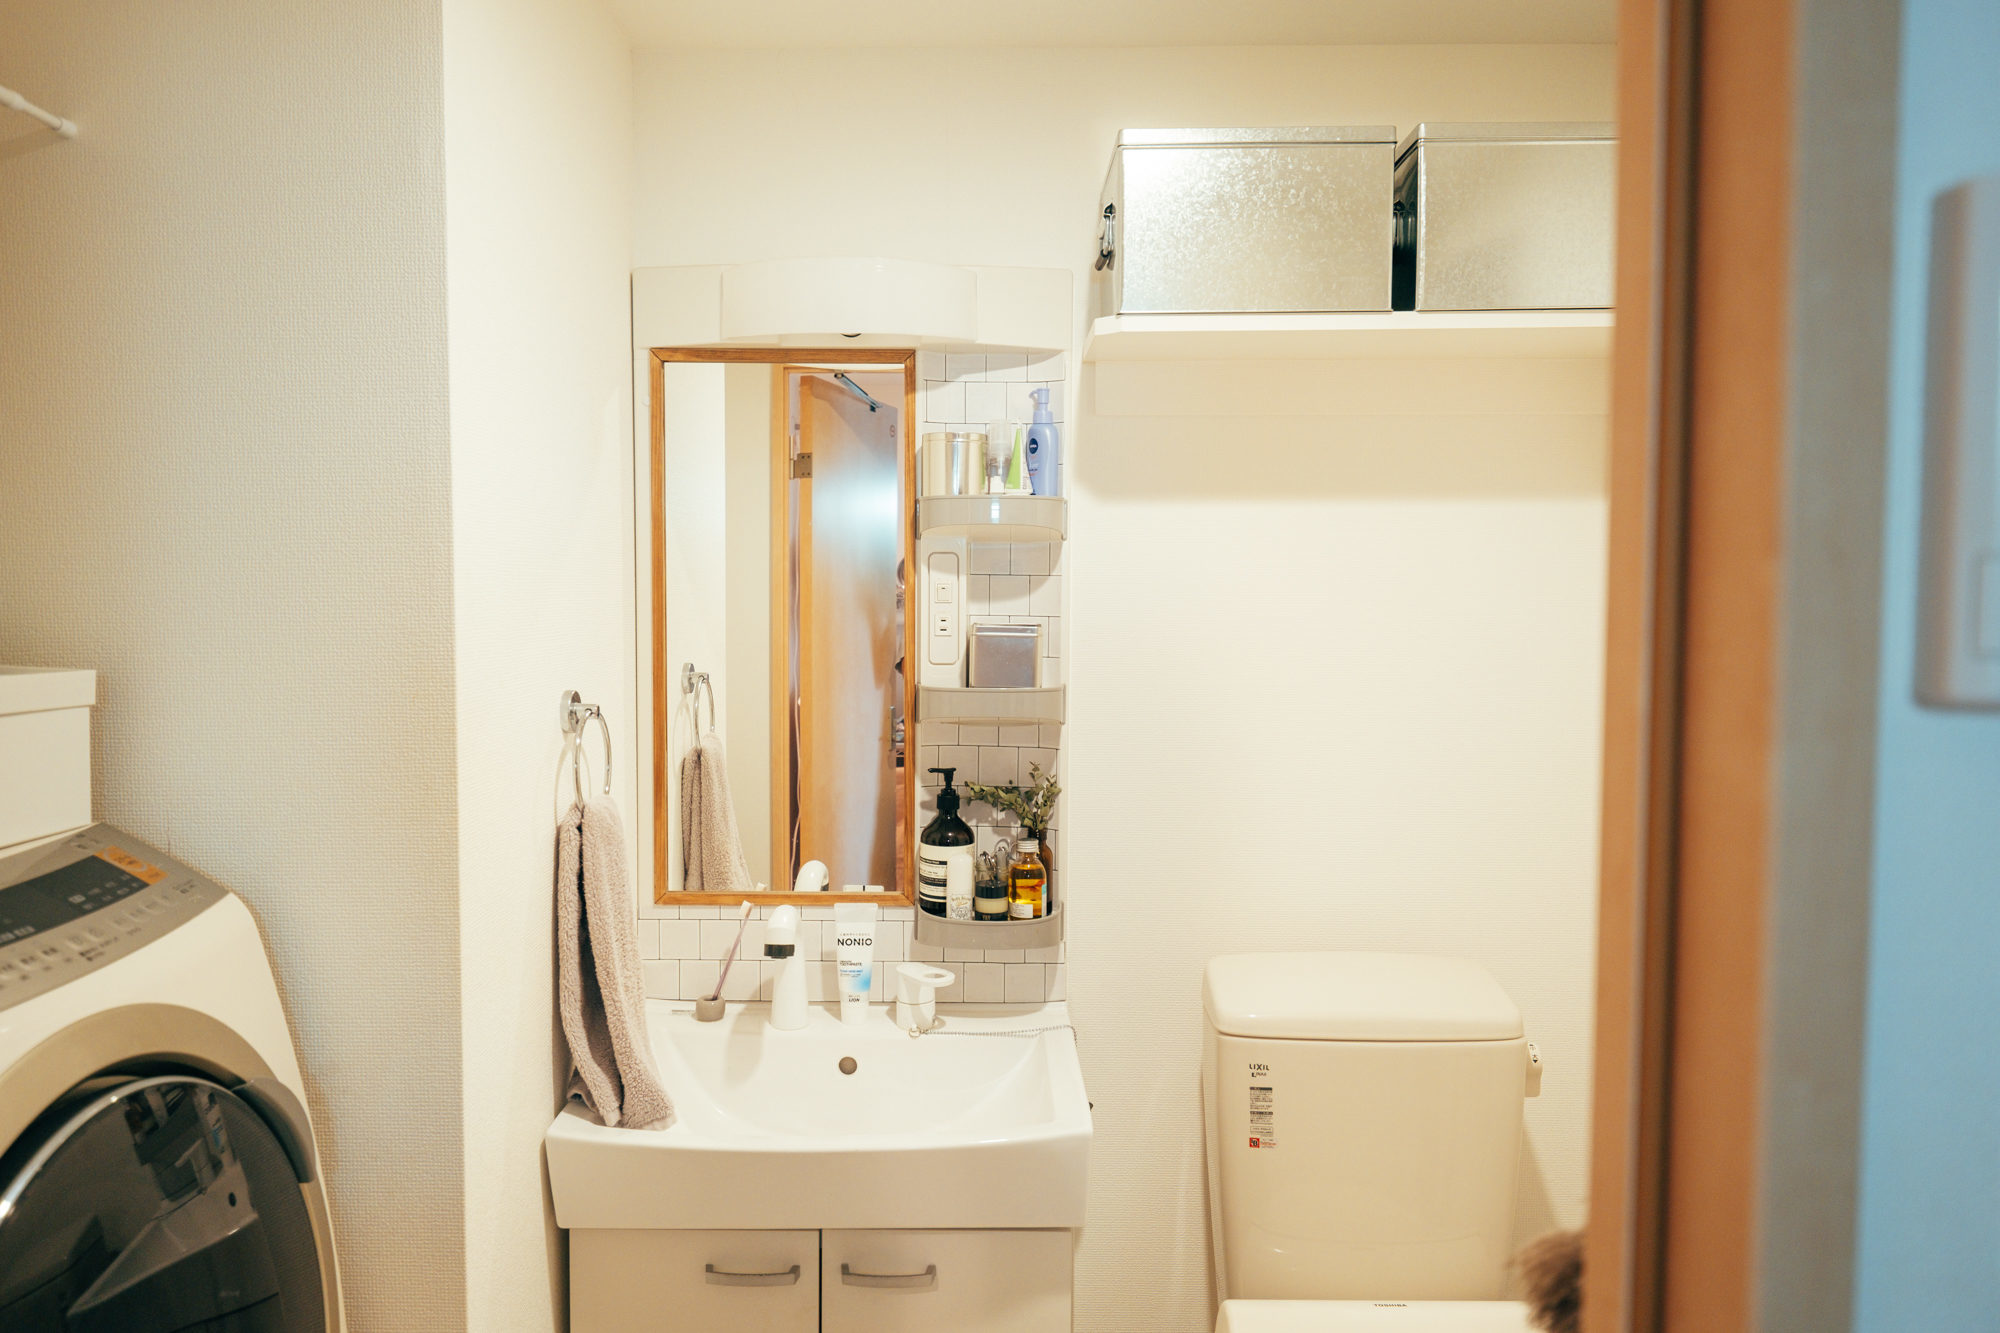 賃貸でもおしゃれな洗面所にしたい 収納 見せ方を変えた8つのアイディア Goodroom Journal